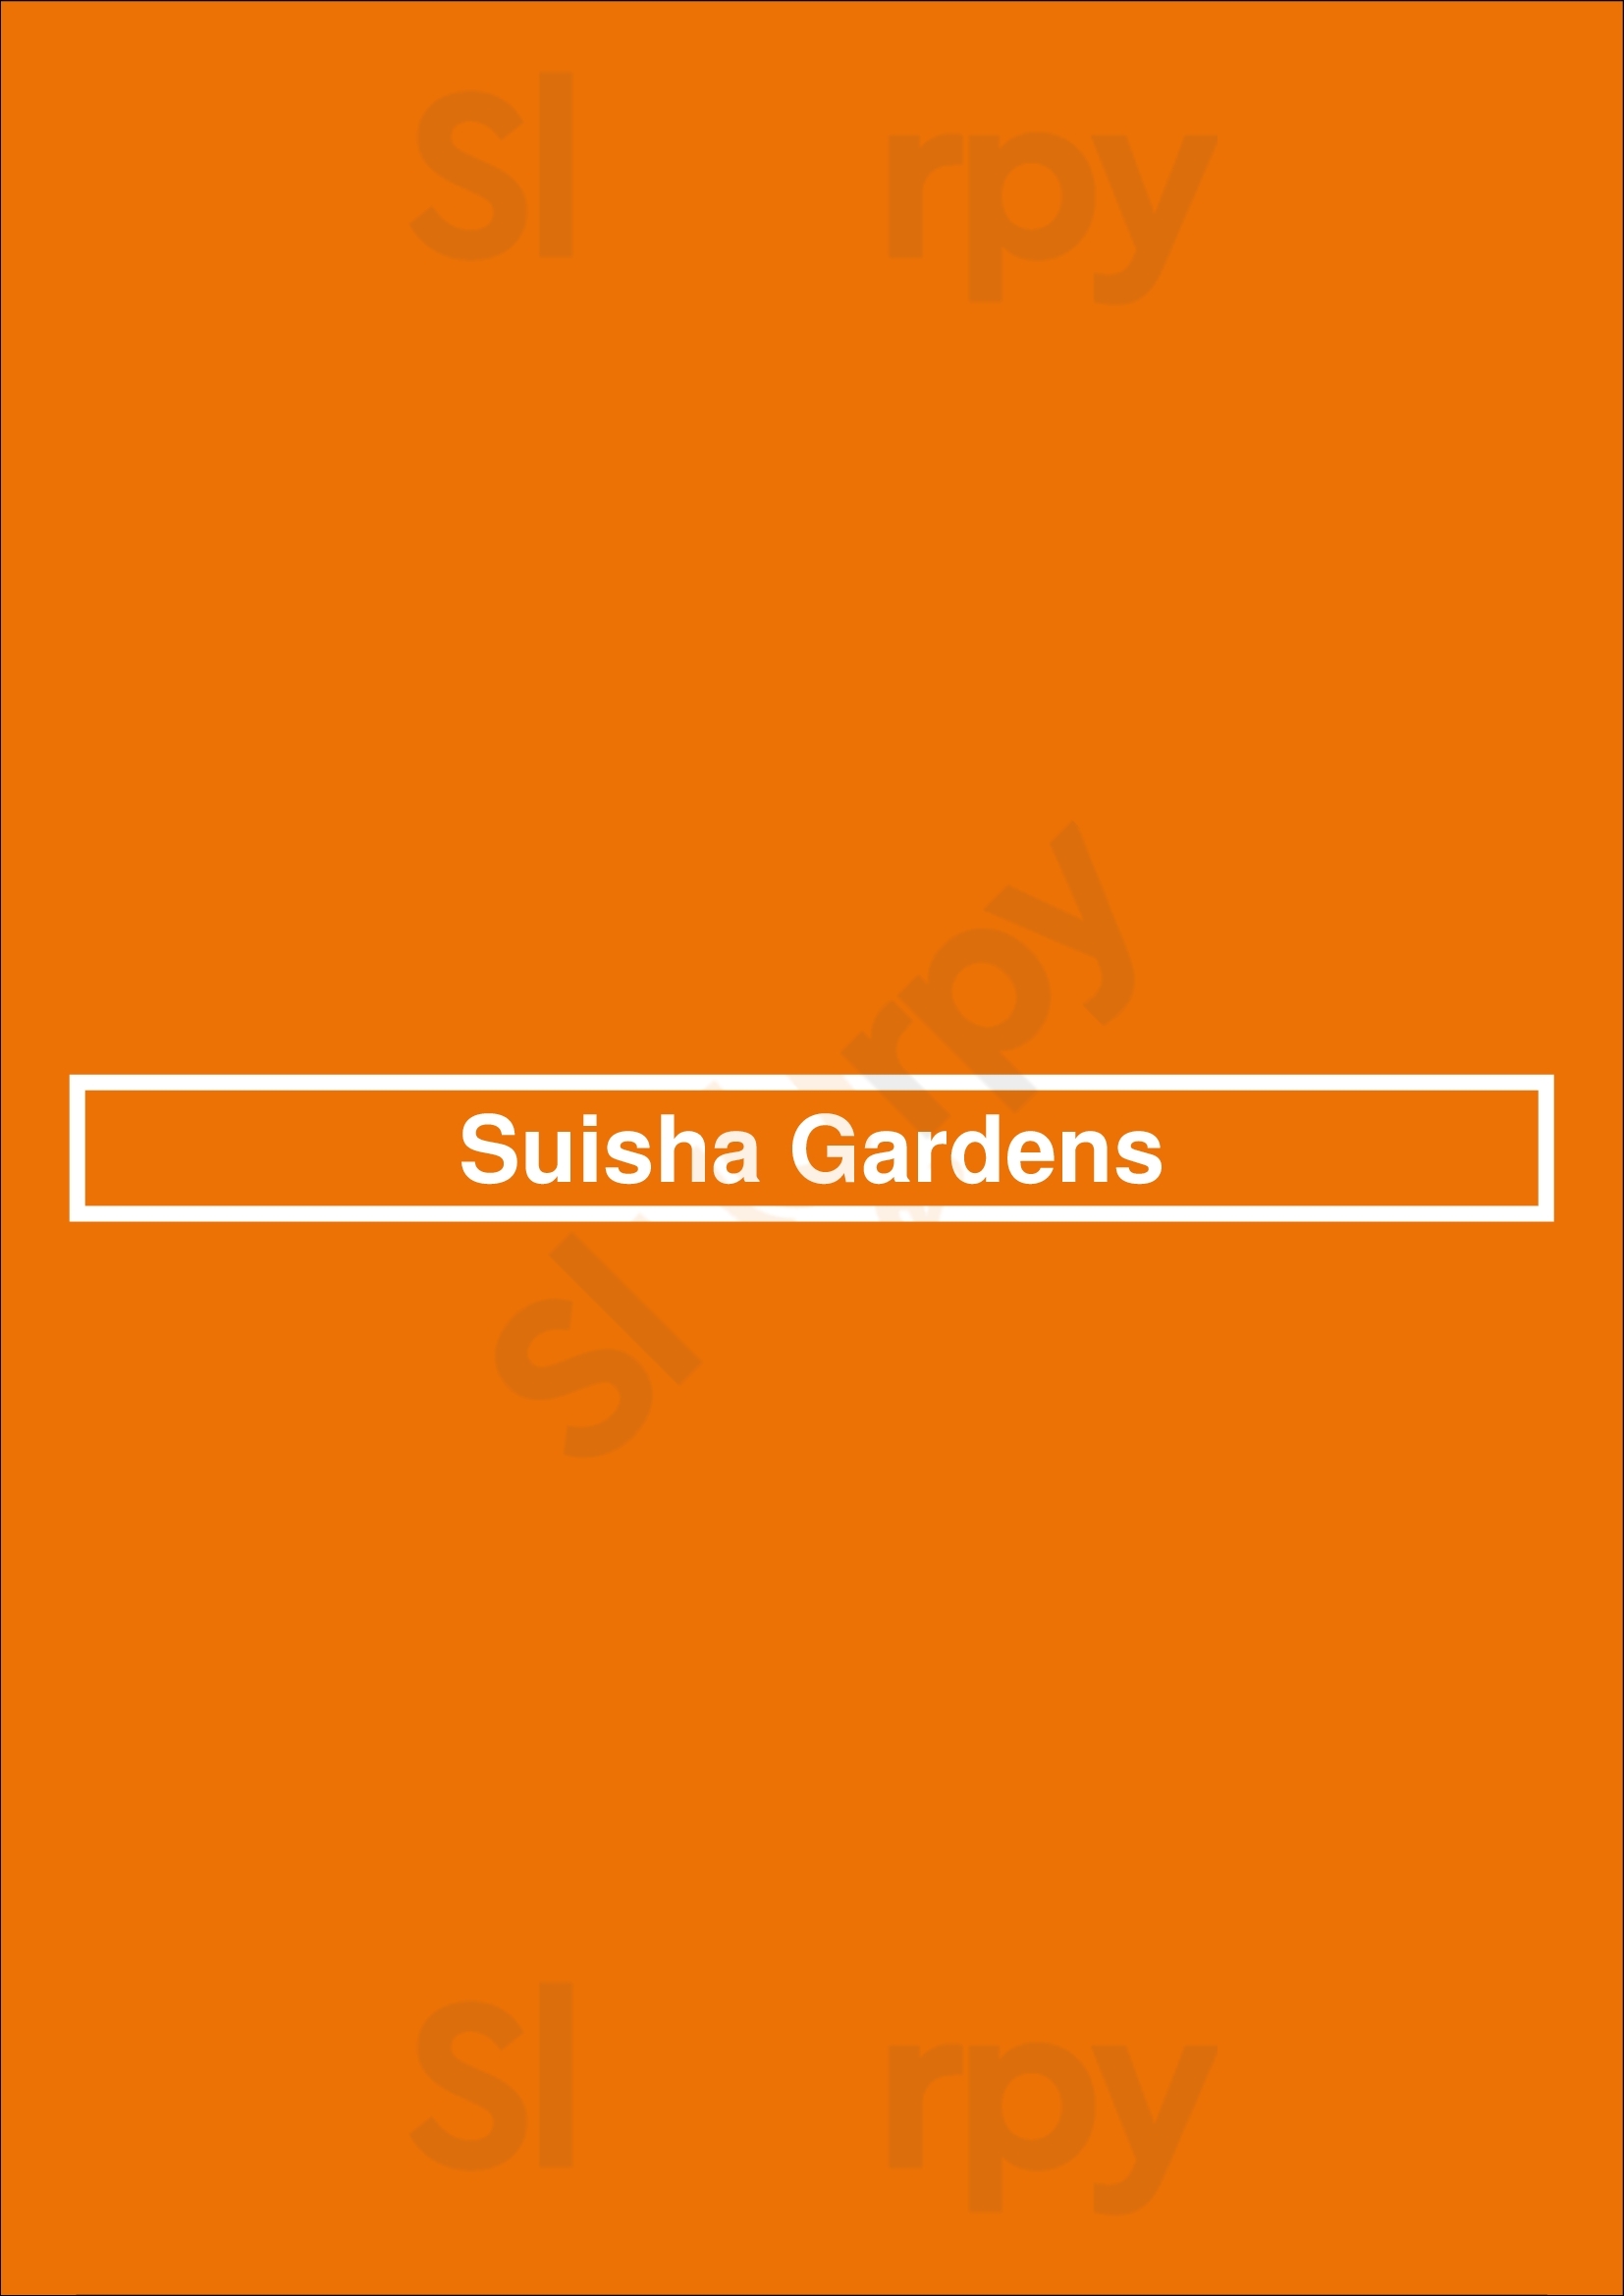 Suisha Gardens Niagara Falls Menu - 1